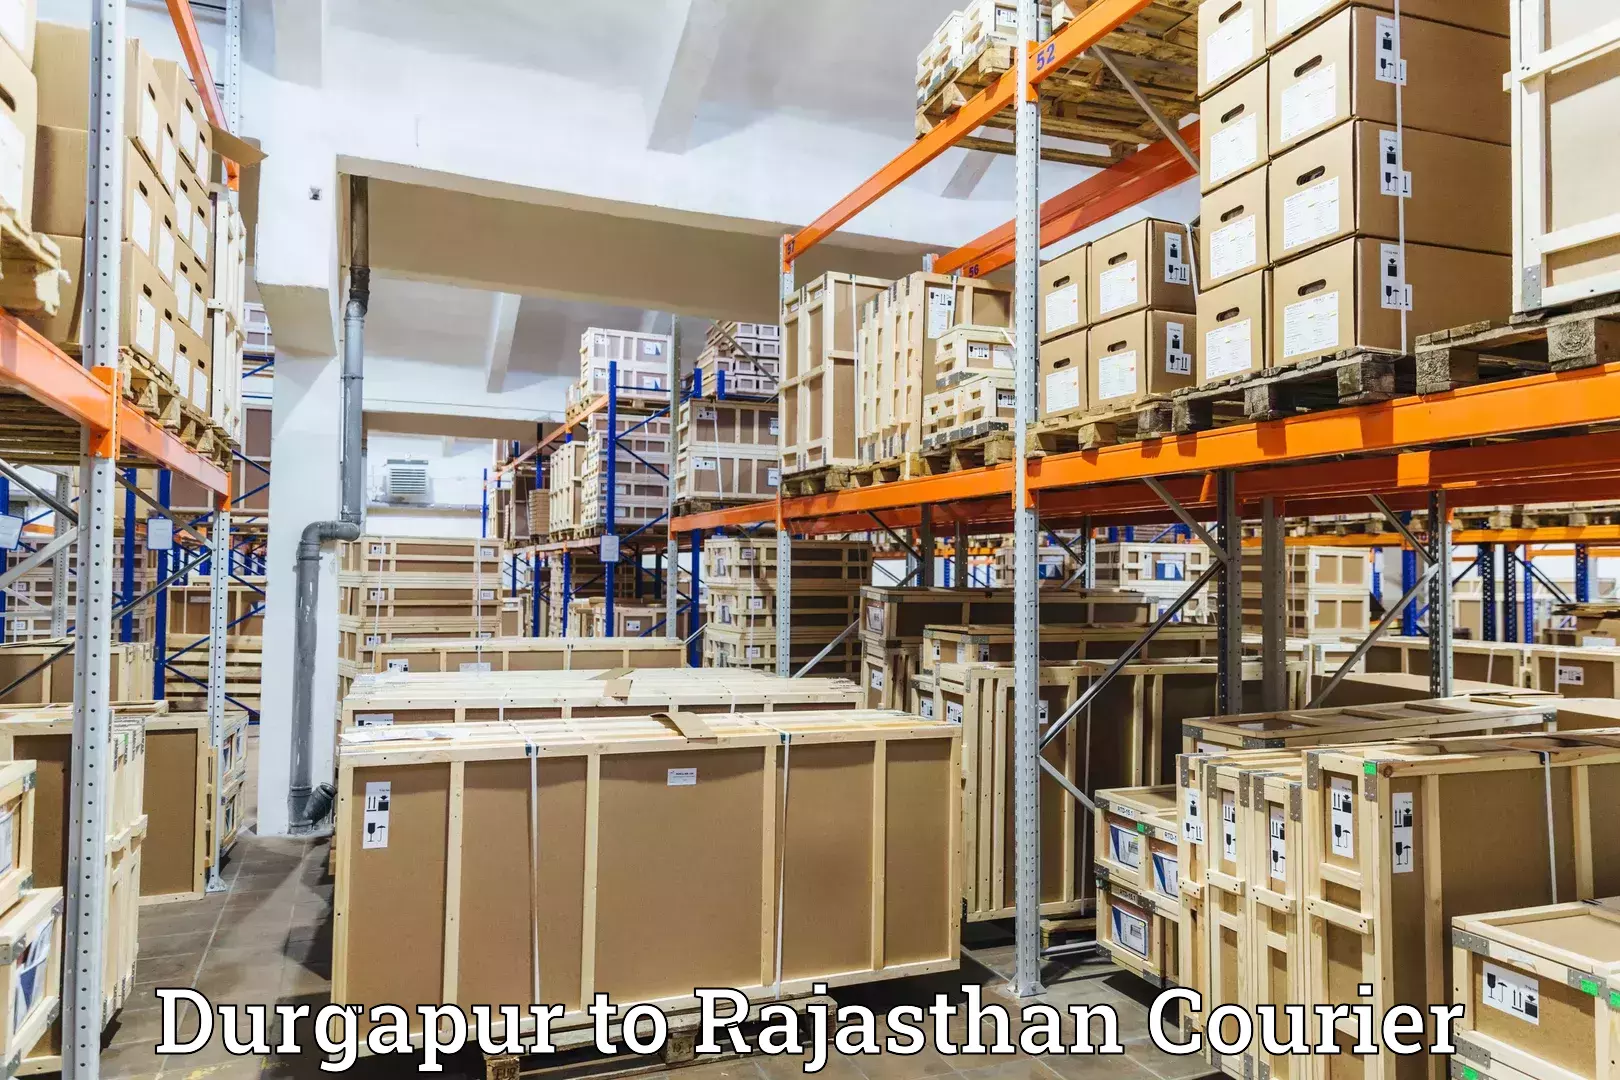 Next-generation courier services Durgapur to Jaisalmer